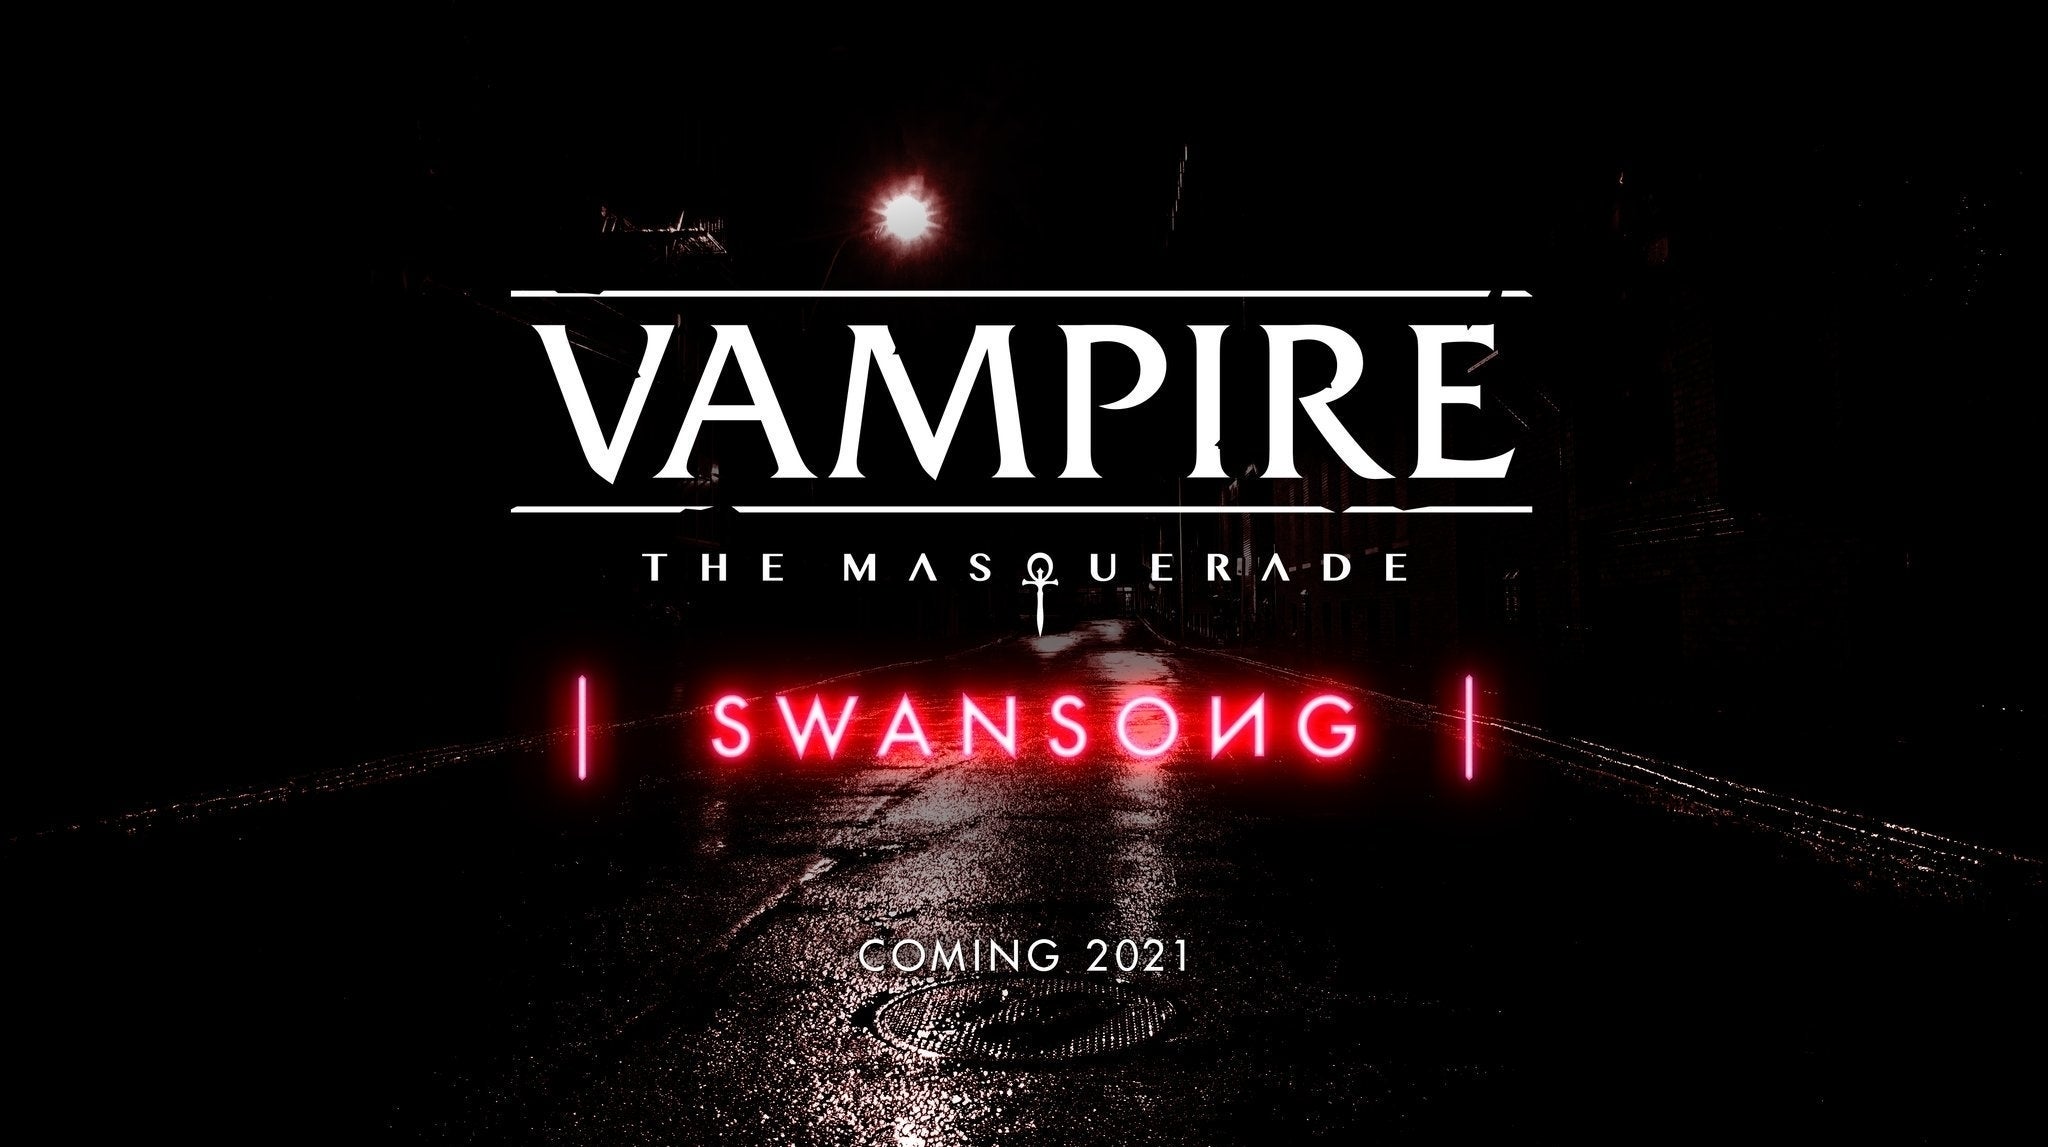 Imagen para El juego de Vampire: The Masquerade de los creadores de The Council se titula Swansong